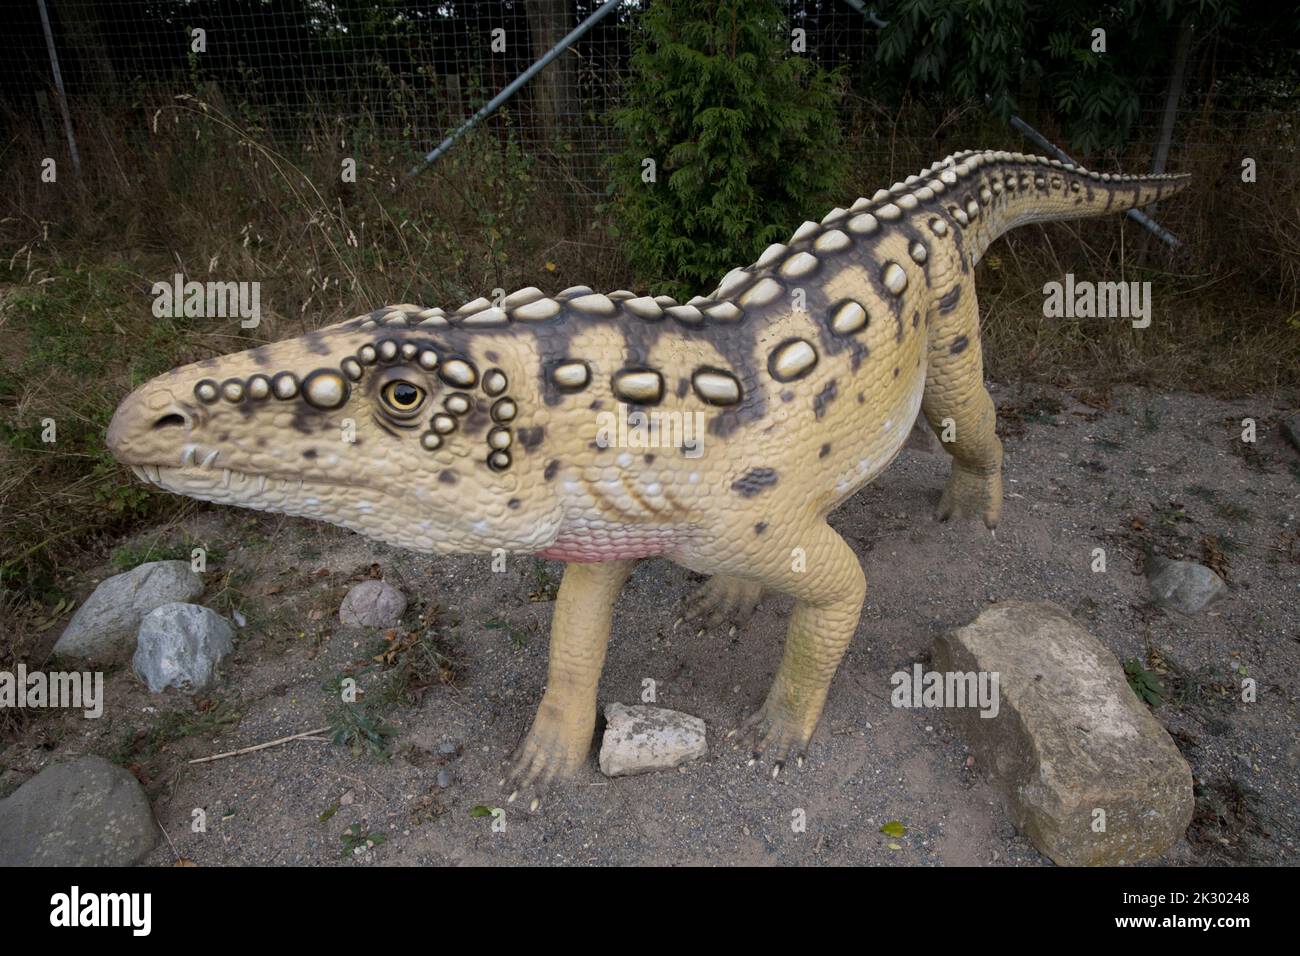 Lifesize model of Ornithosuchus dinosaur Stock Photo